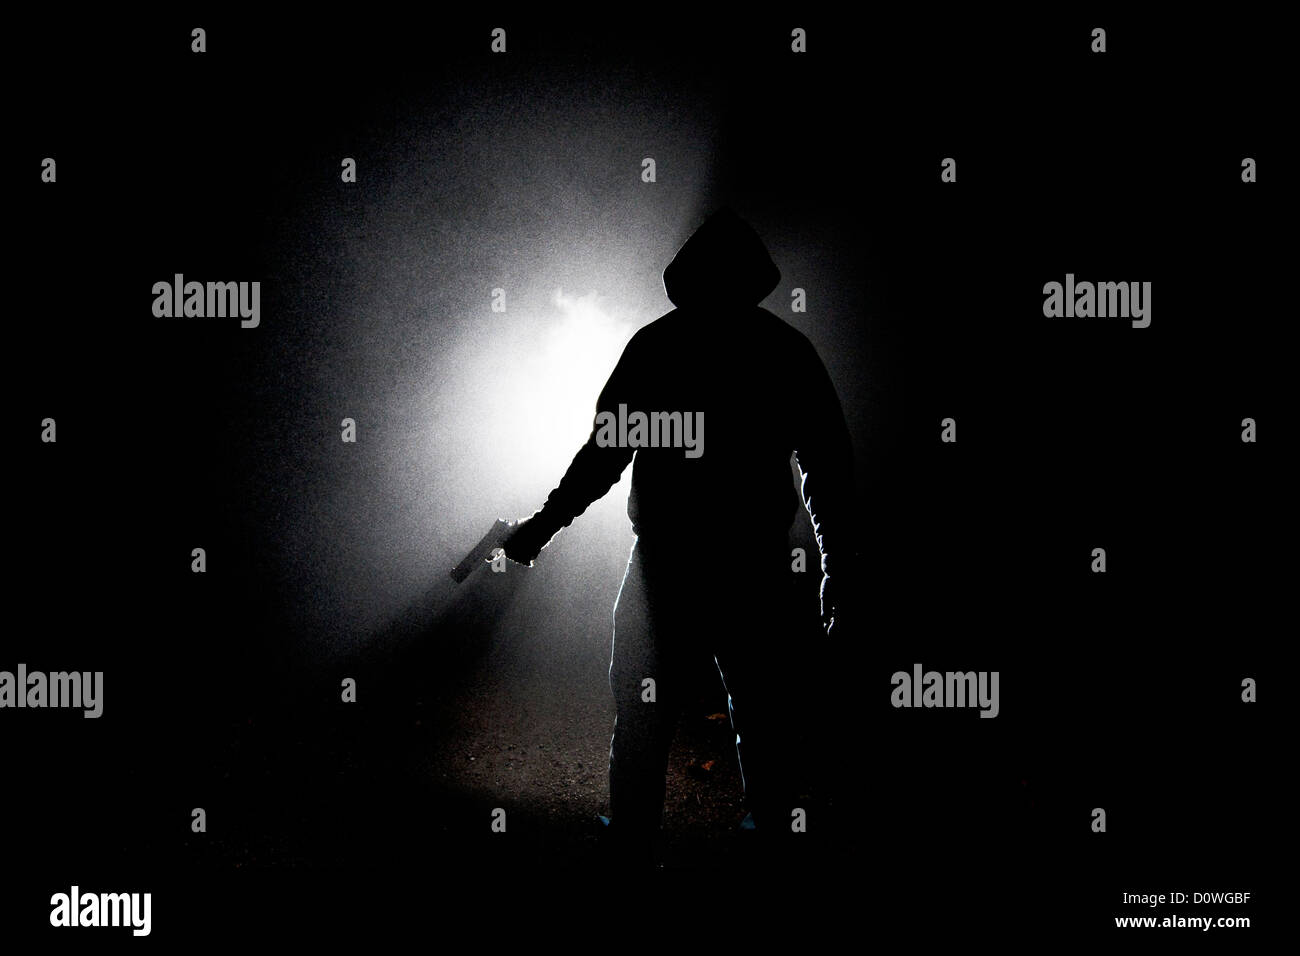 Noche neblinosa Tirador: Una silueta oscura de un hombre encapuchado sosteniendo una pistola semiautomática a su lado de una manera amenazadora. Foto de stock